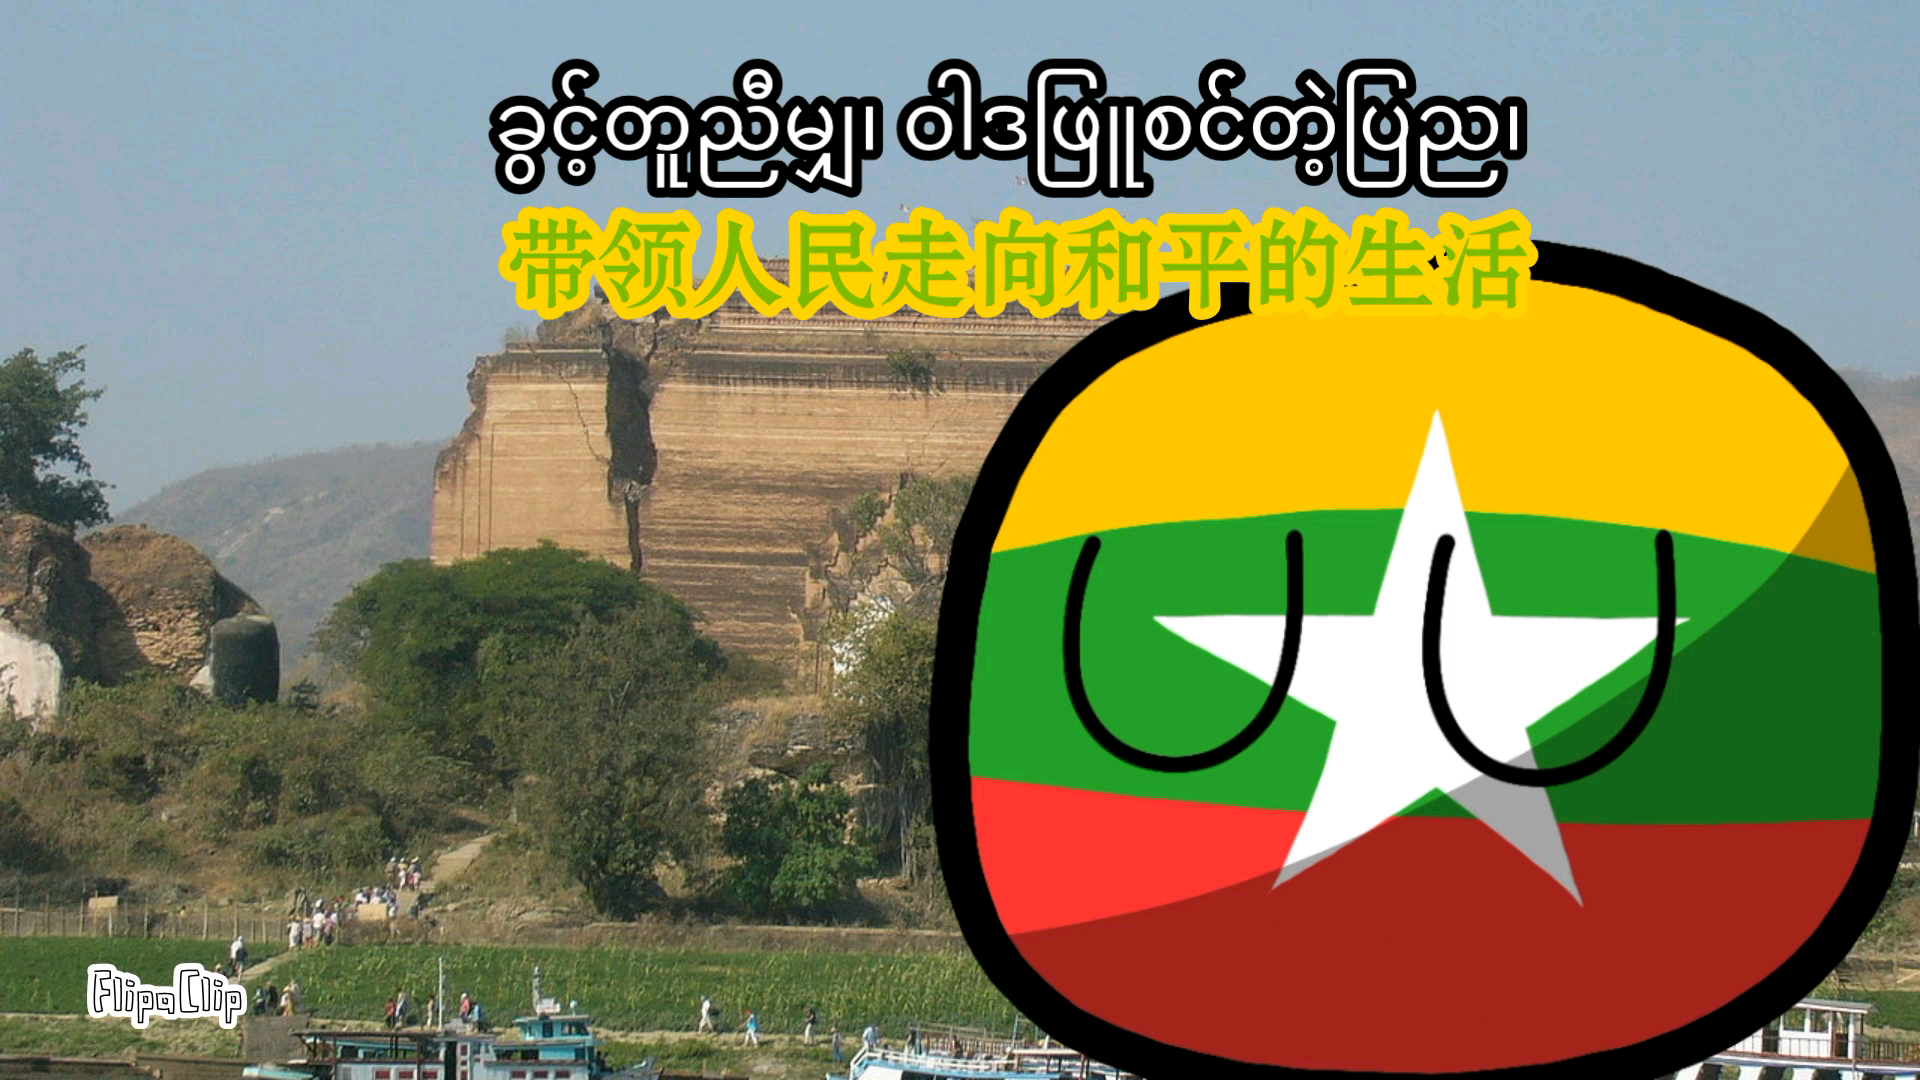 缅甸国旗国歌图片